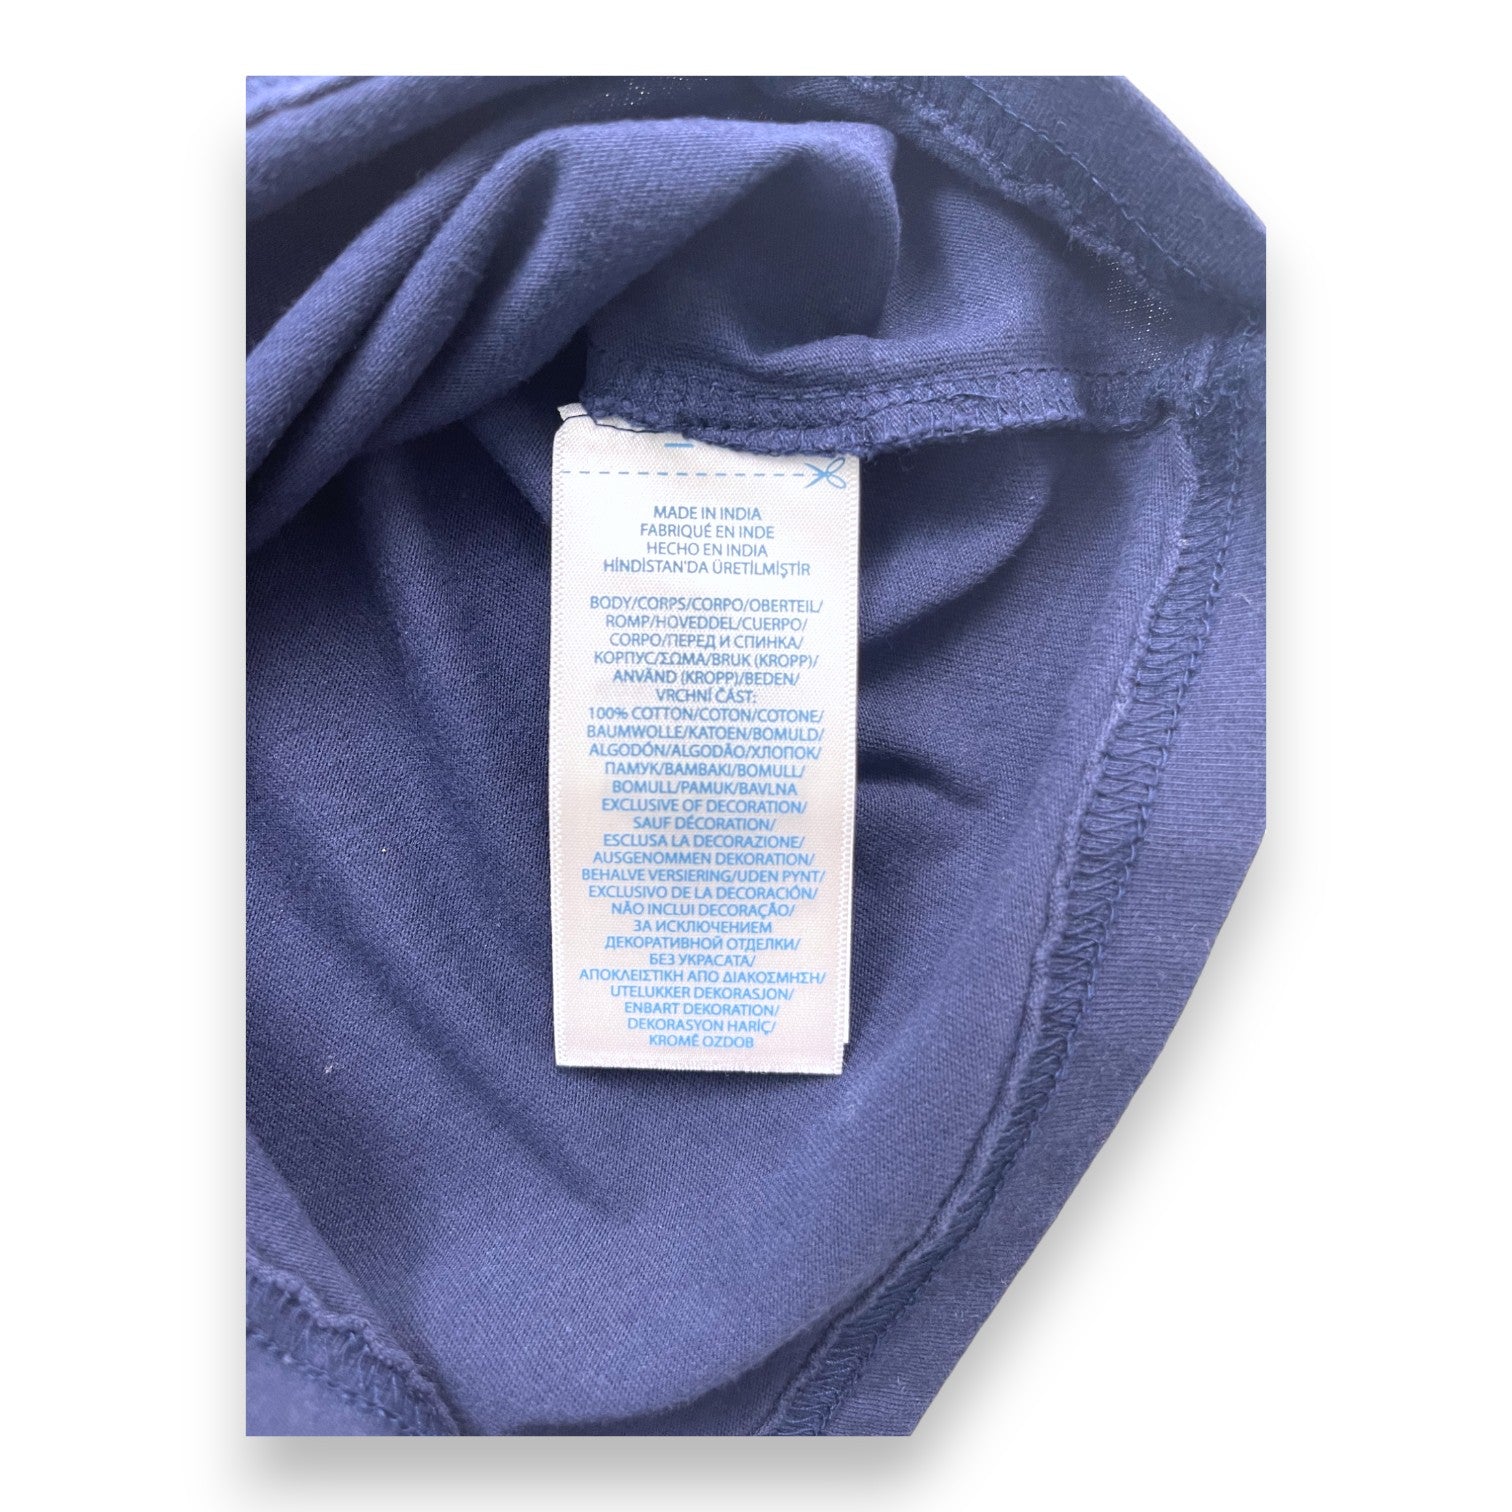 RALPH LAUREN - T shirt bleu marine logo brodé - 9 mois